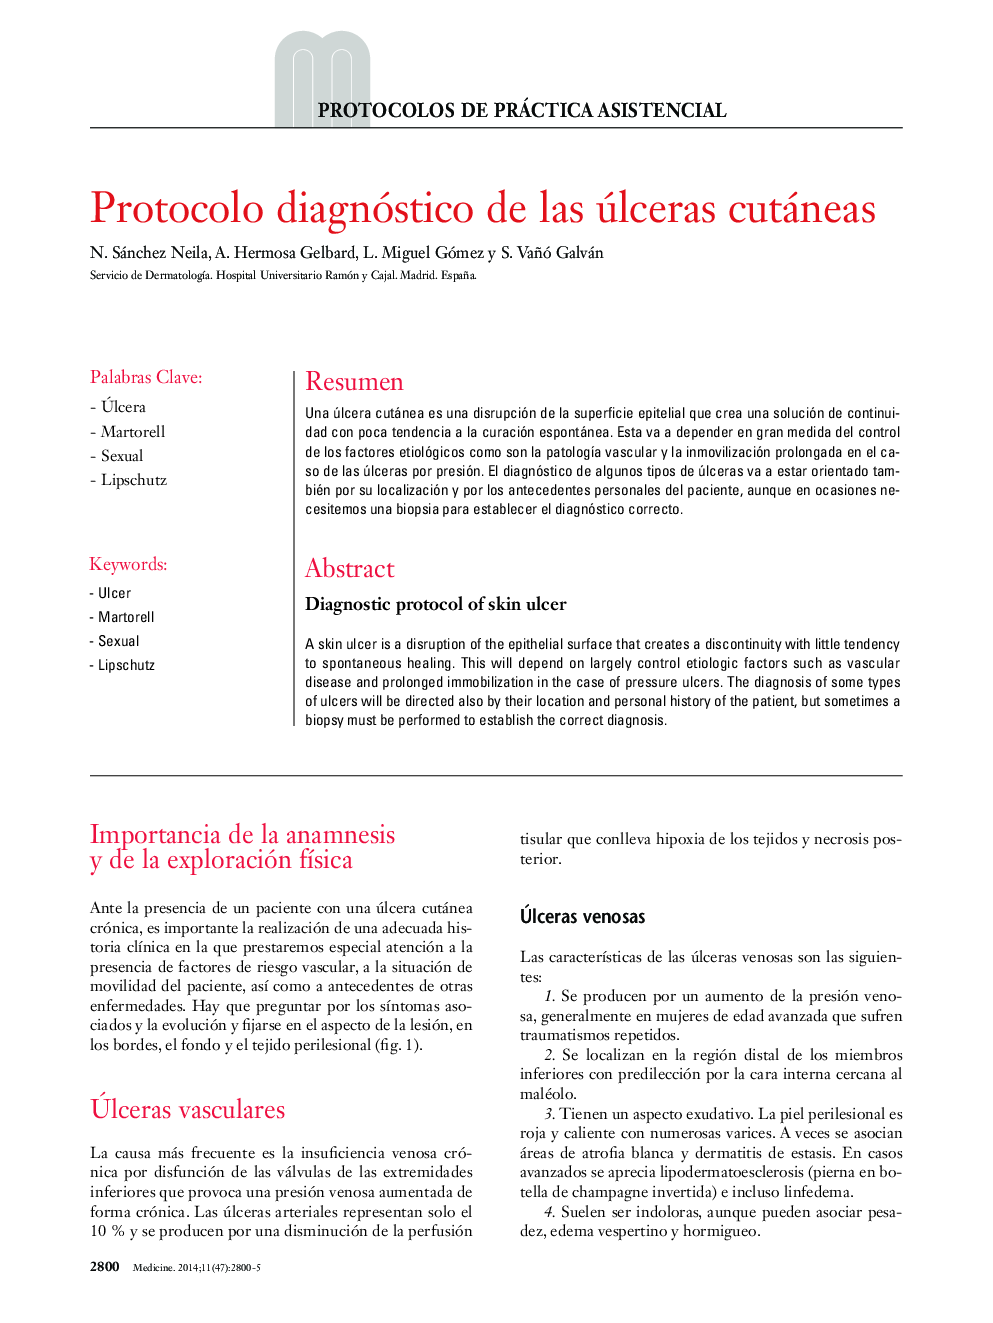 Protocolo diagnóstico de las úlceras cutáneas